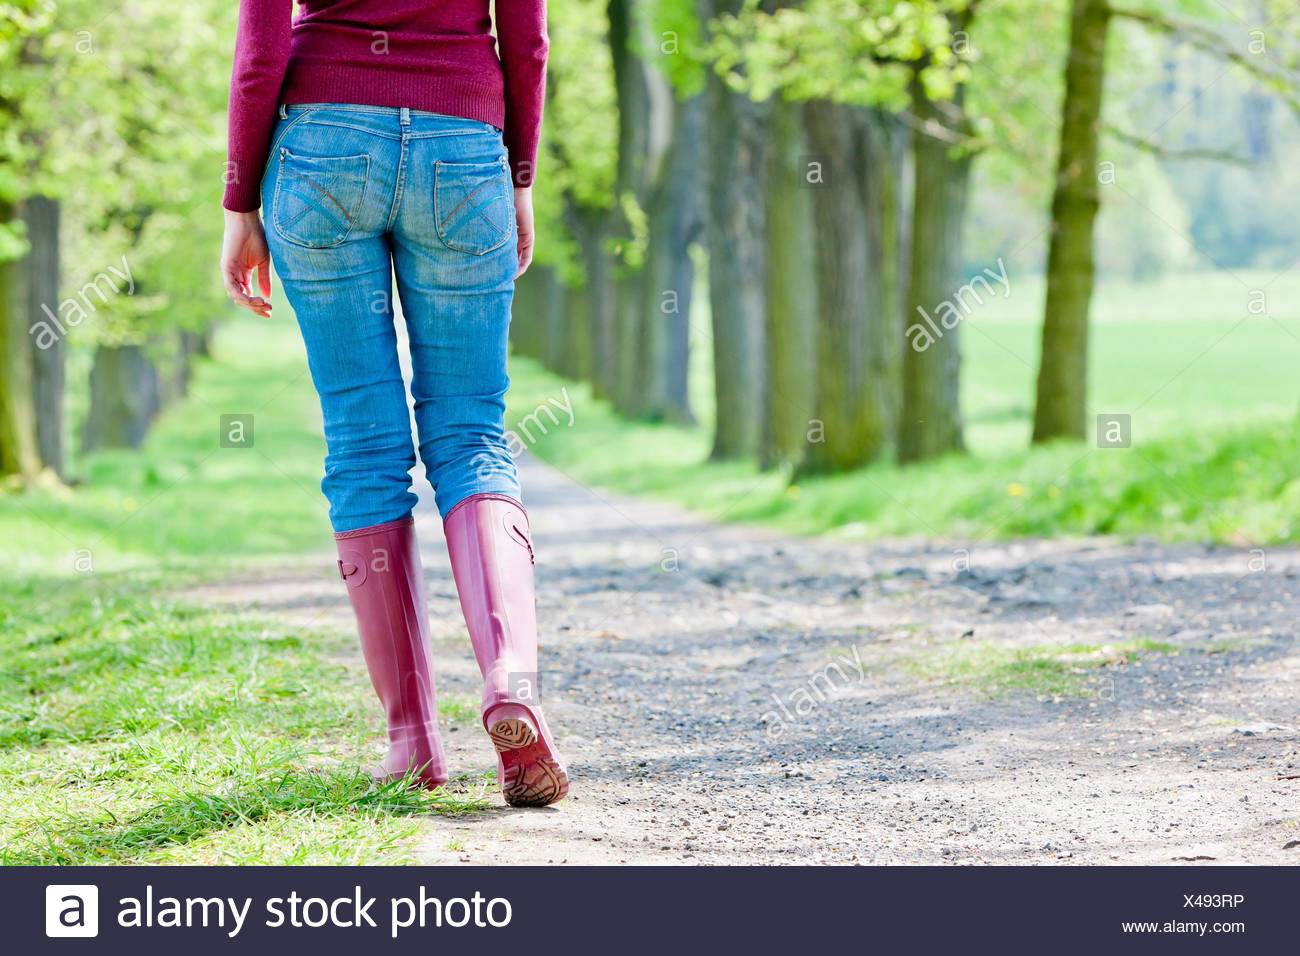 women wearing rubber boots